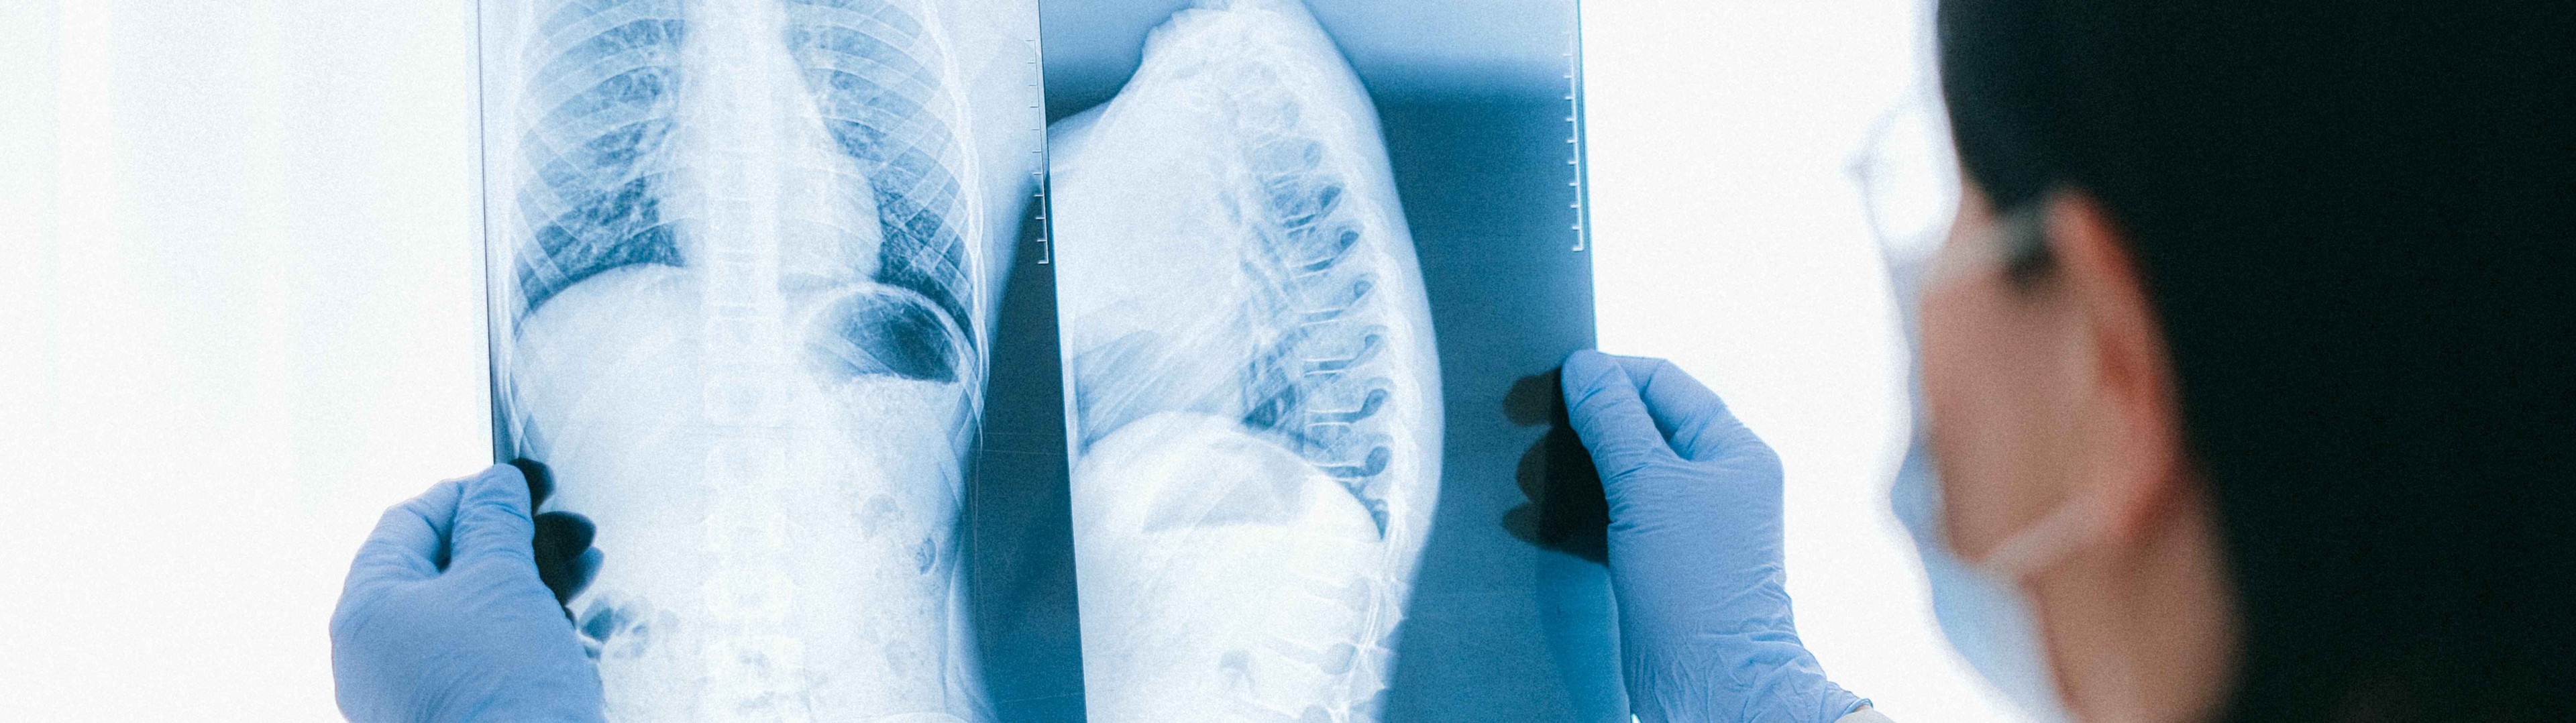 Osteogénesis imperfecta: cuando los huesos se rompen con sólo mirarlos